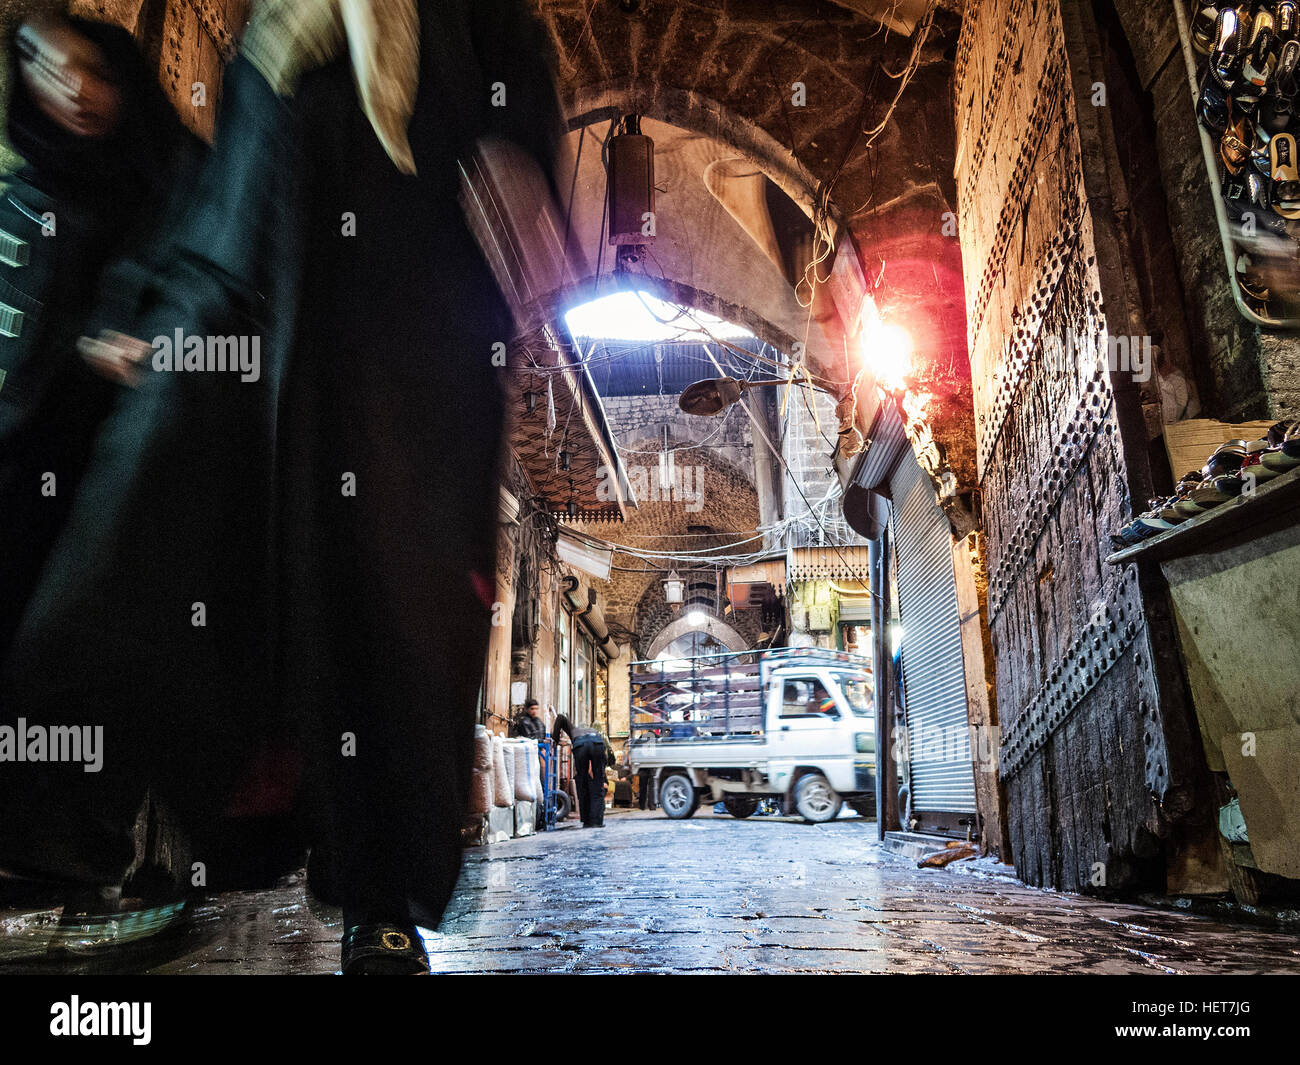 La rue commerçante animée des souks de la vieille ville d'Alep en Syrie Banque D'Images